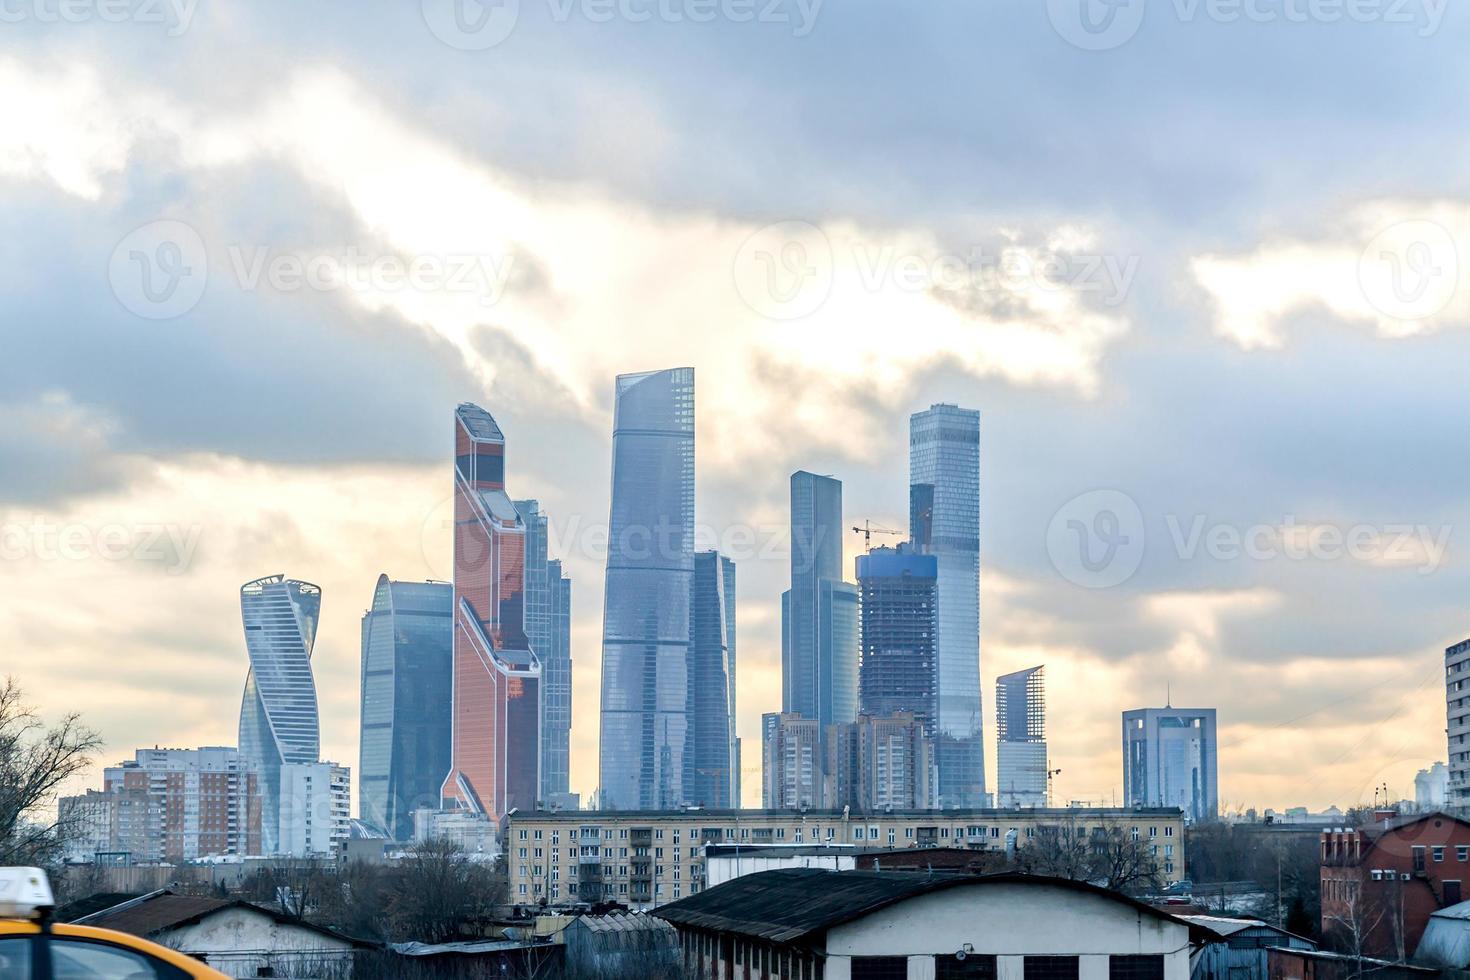 vista da paisagem urbana - arranha-céus modernos e prédios de favela juntos foto